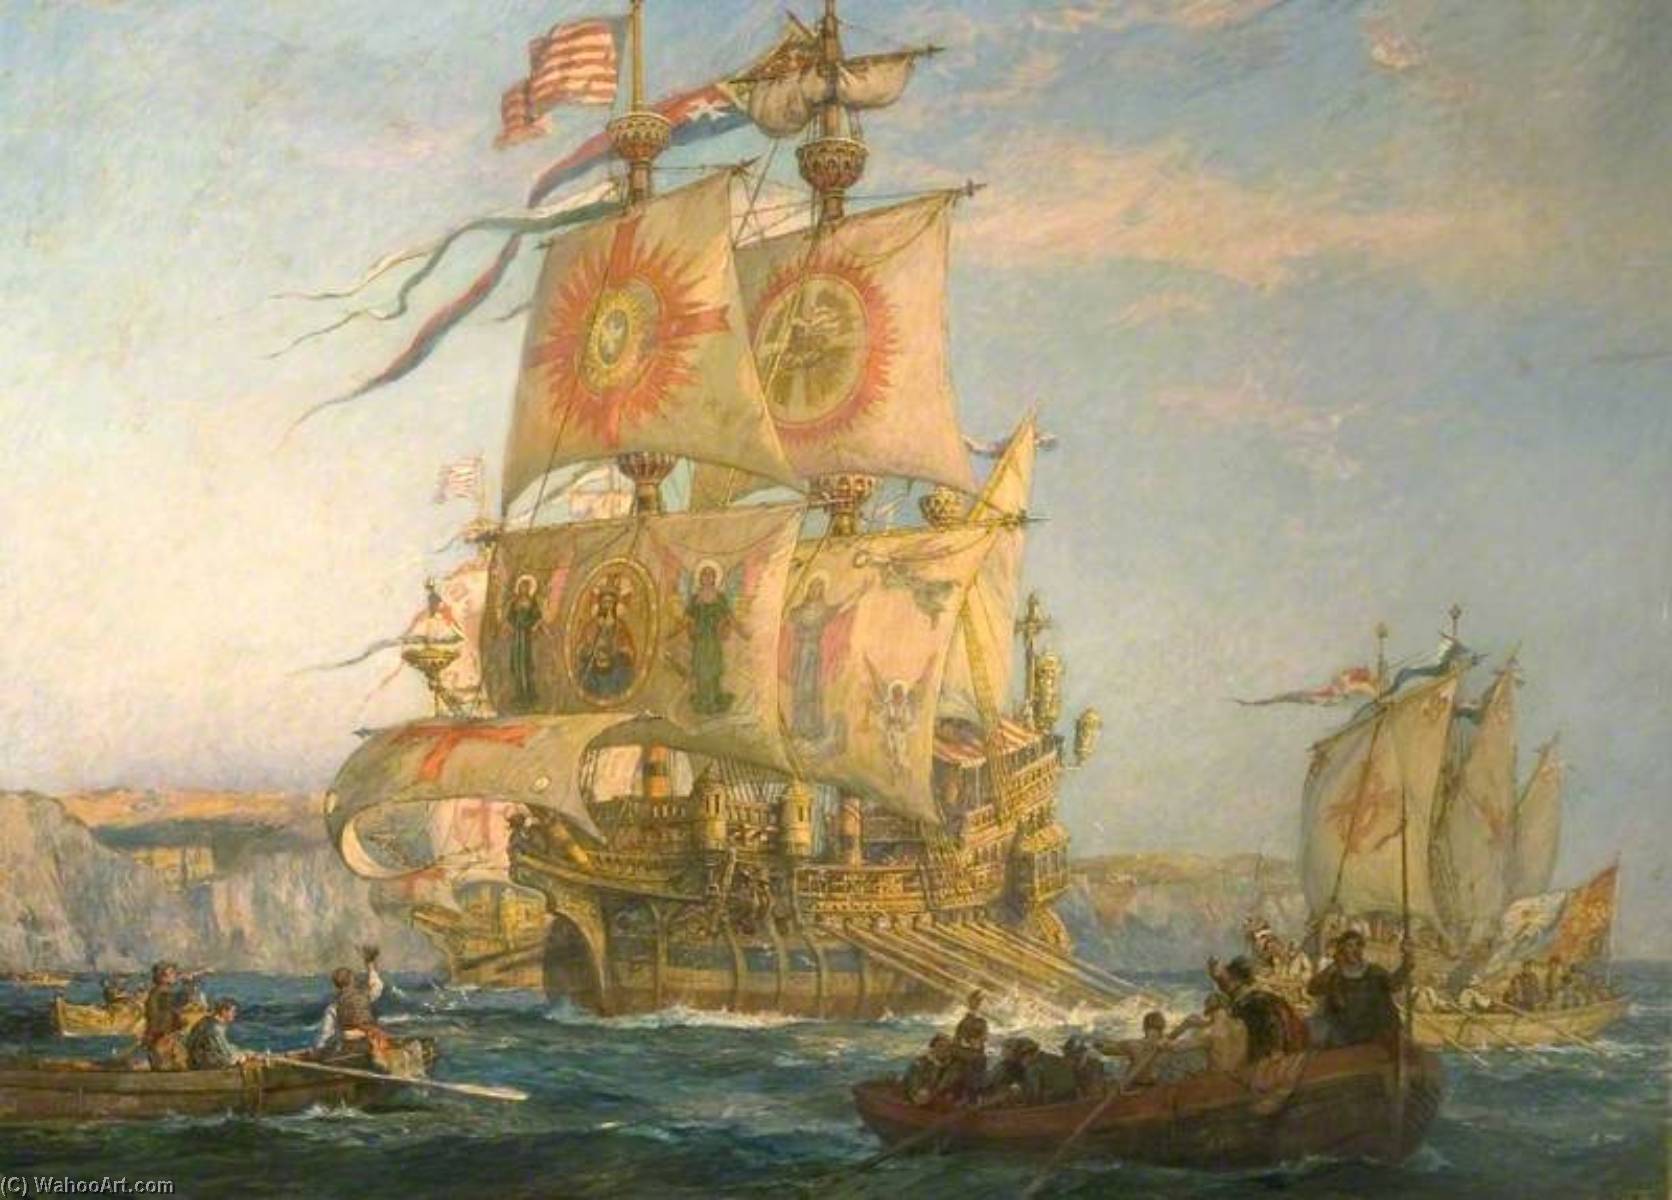 WikiOO.org - Enciclopédia das Belas Artes - Pintura, Arte por Bernard Finnigan Gribble - The Return of the Argosy Galleons